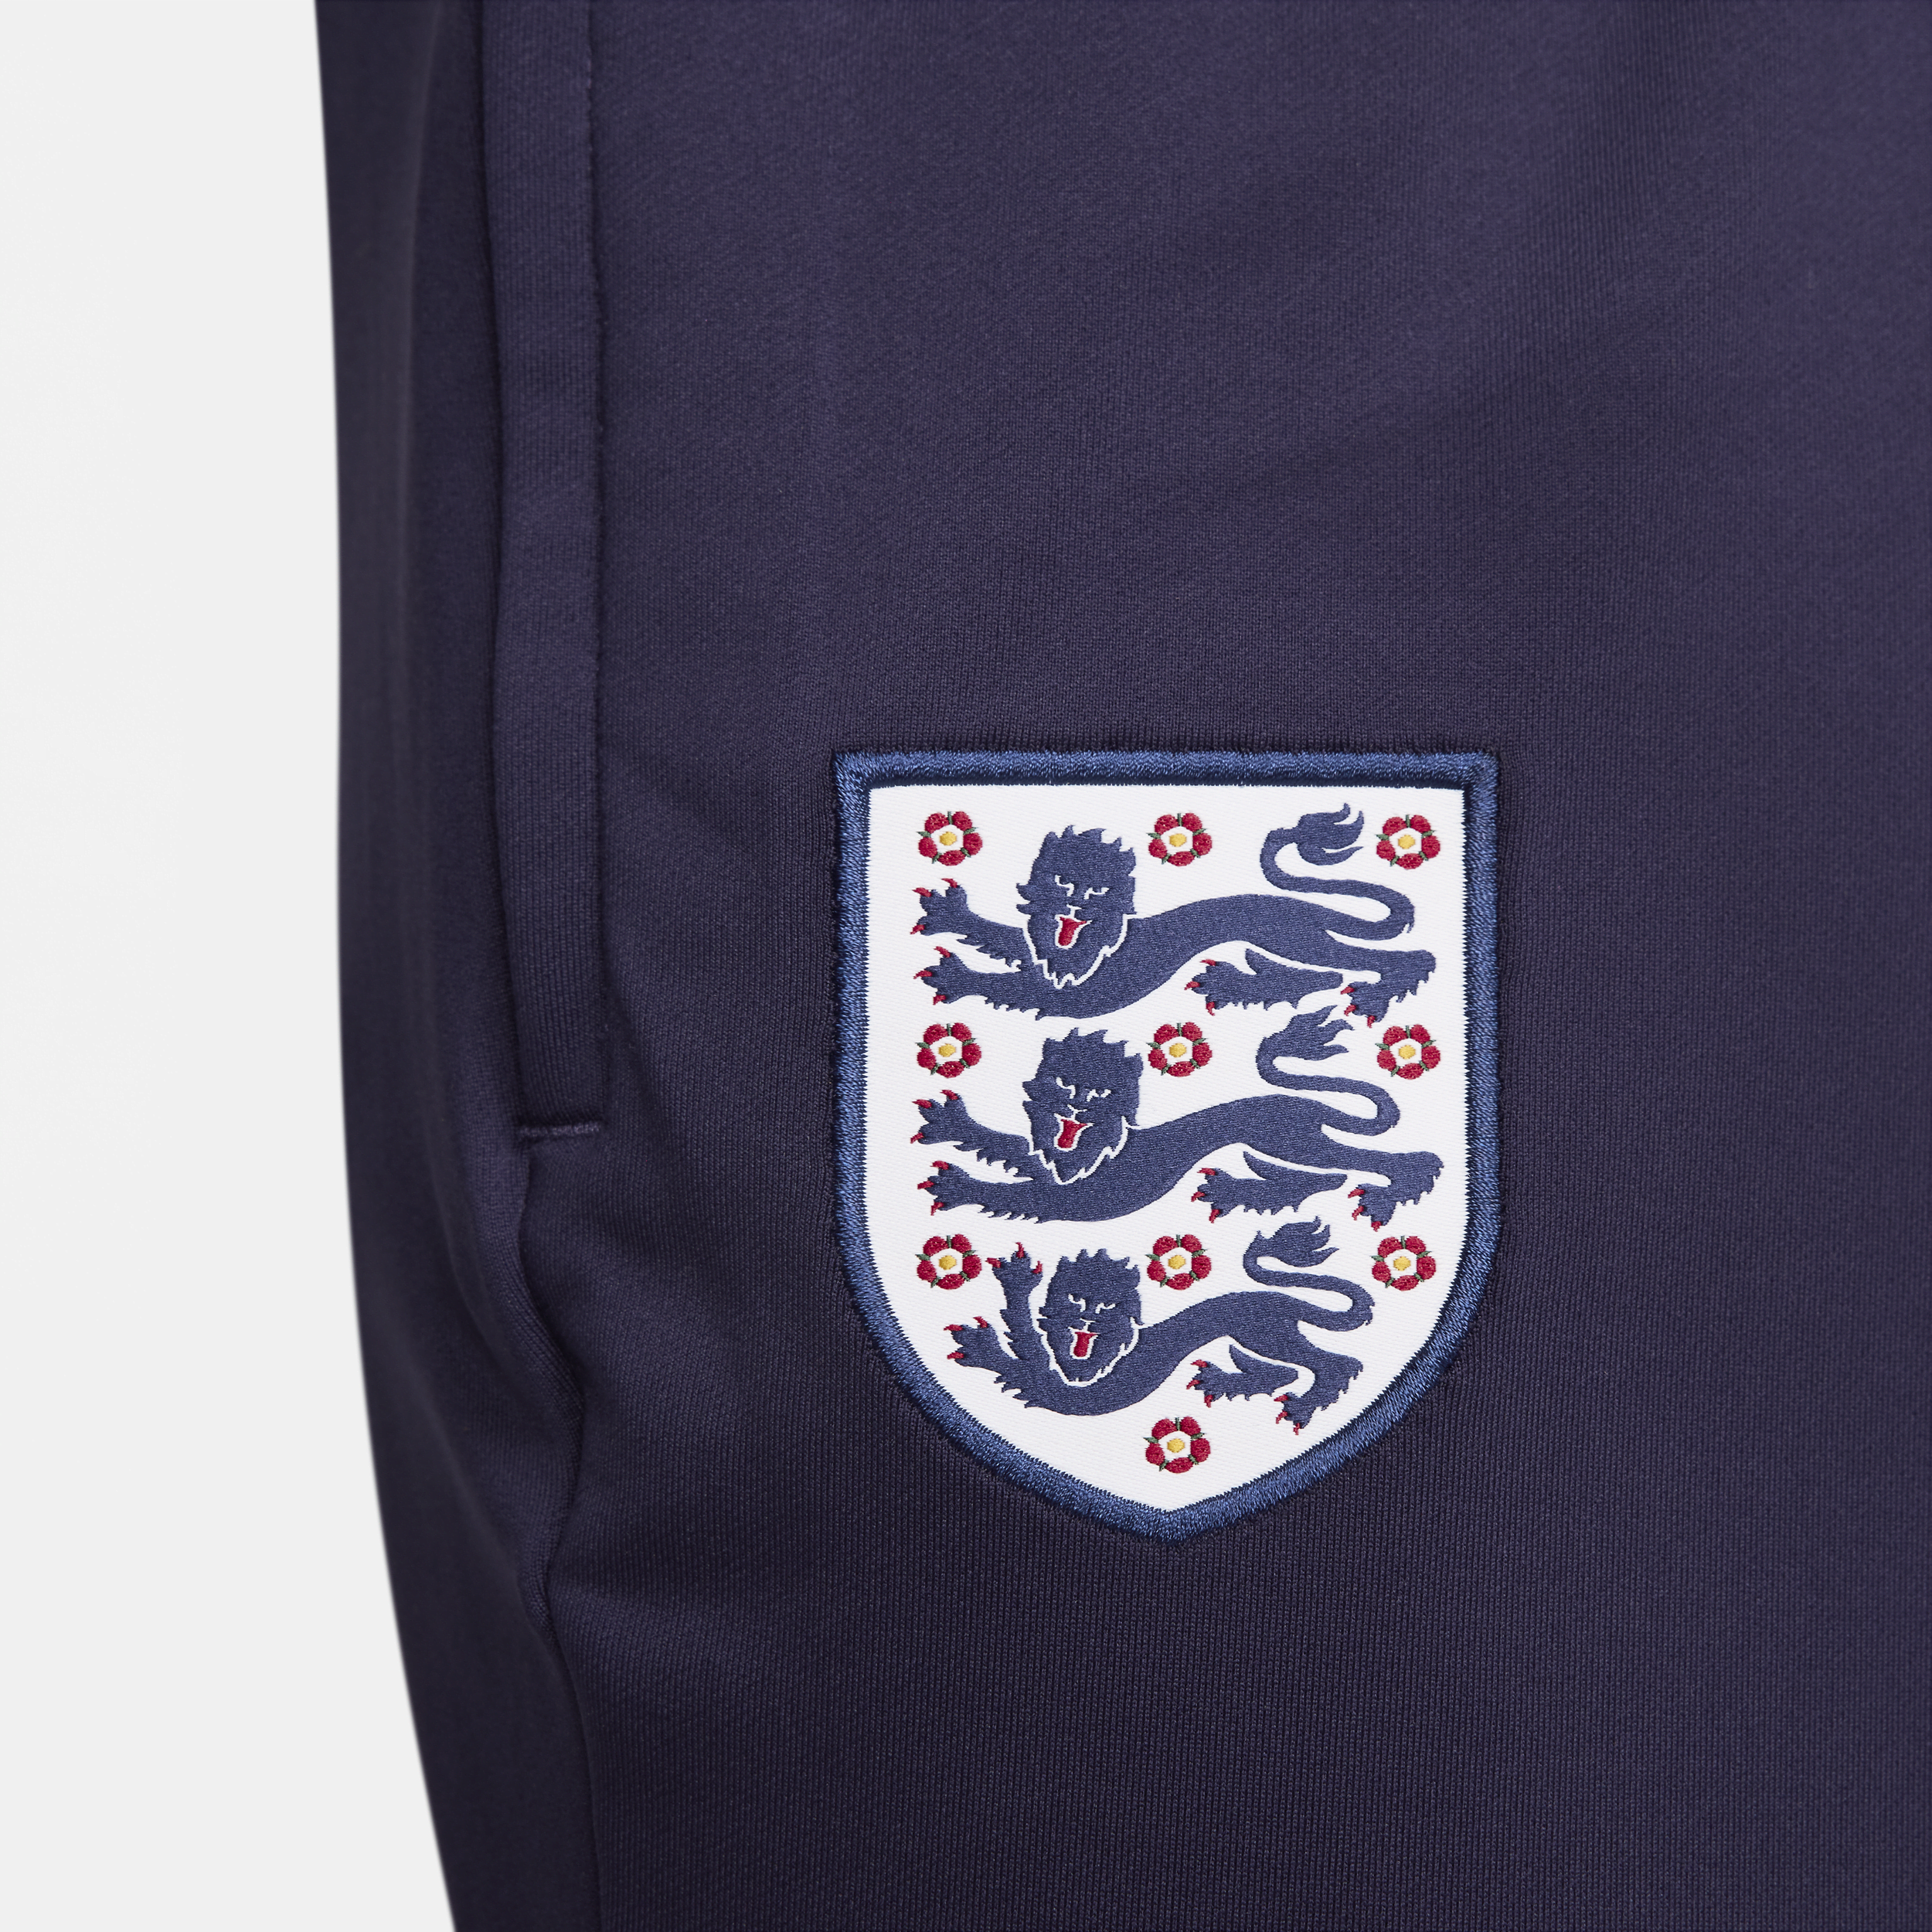 Nike Engeland Strike Dri-FIT knit voetbalbroek voor heren Paars